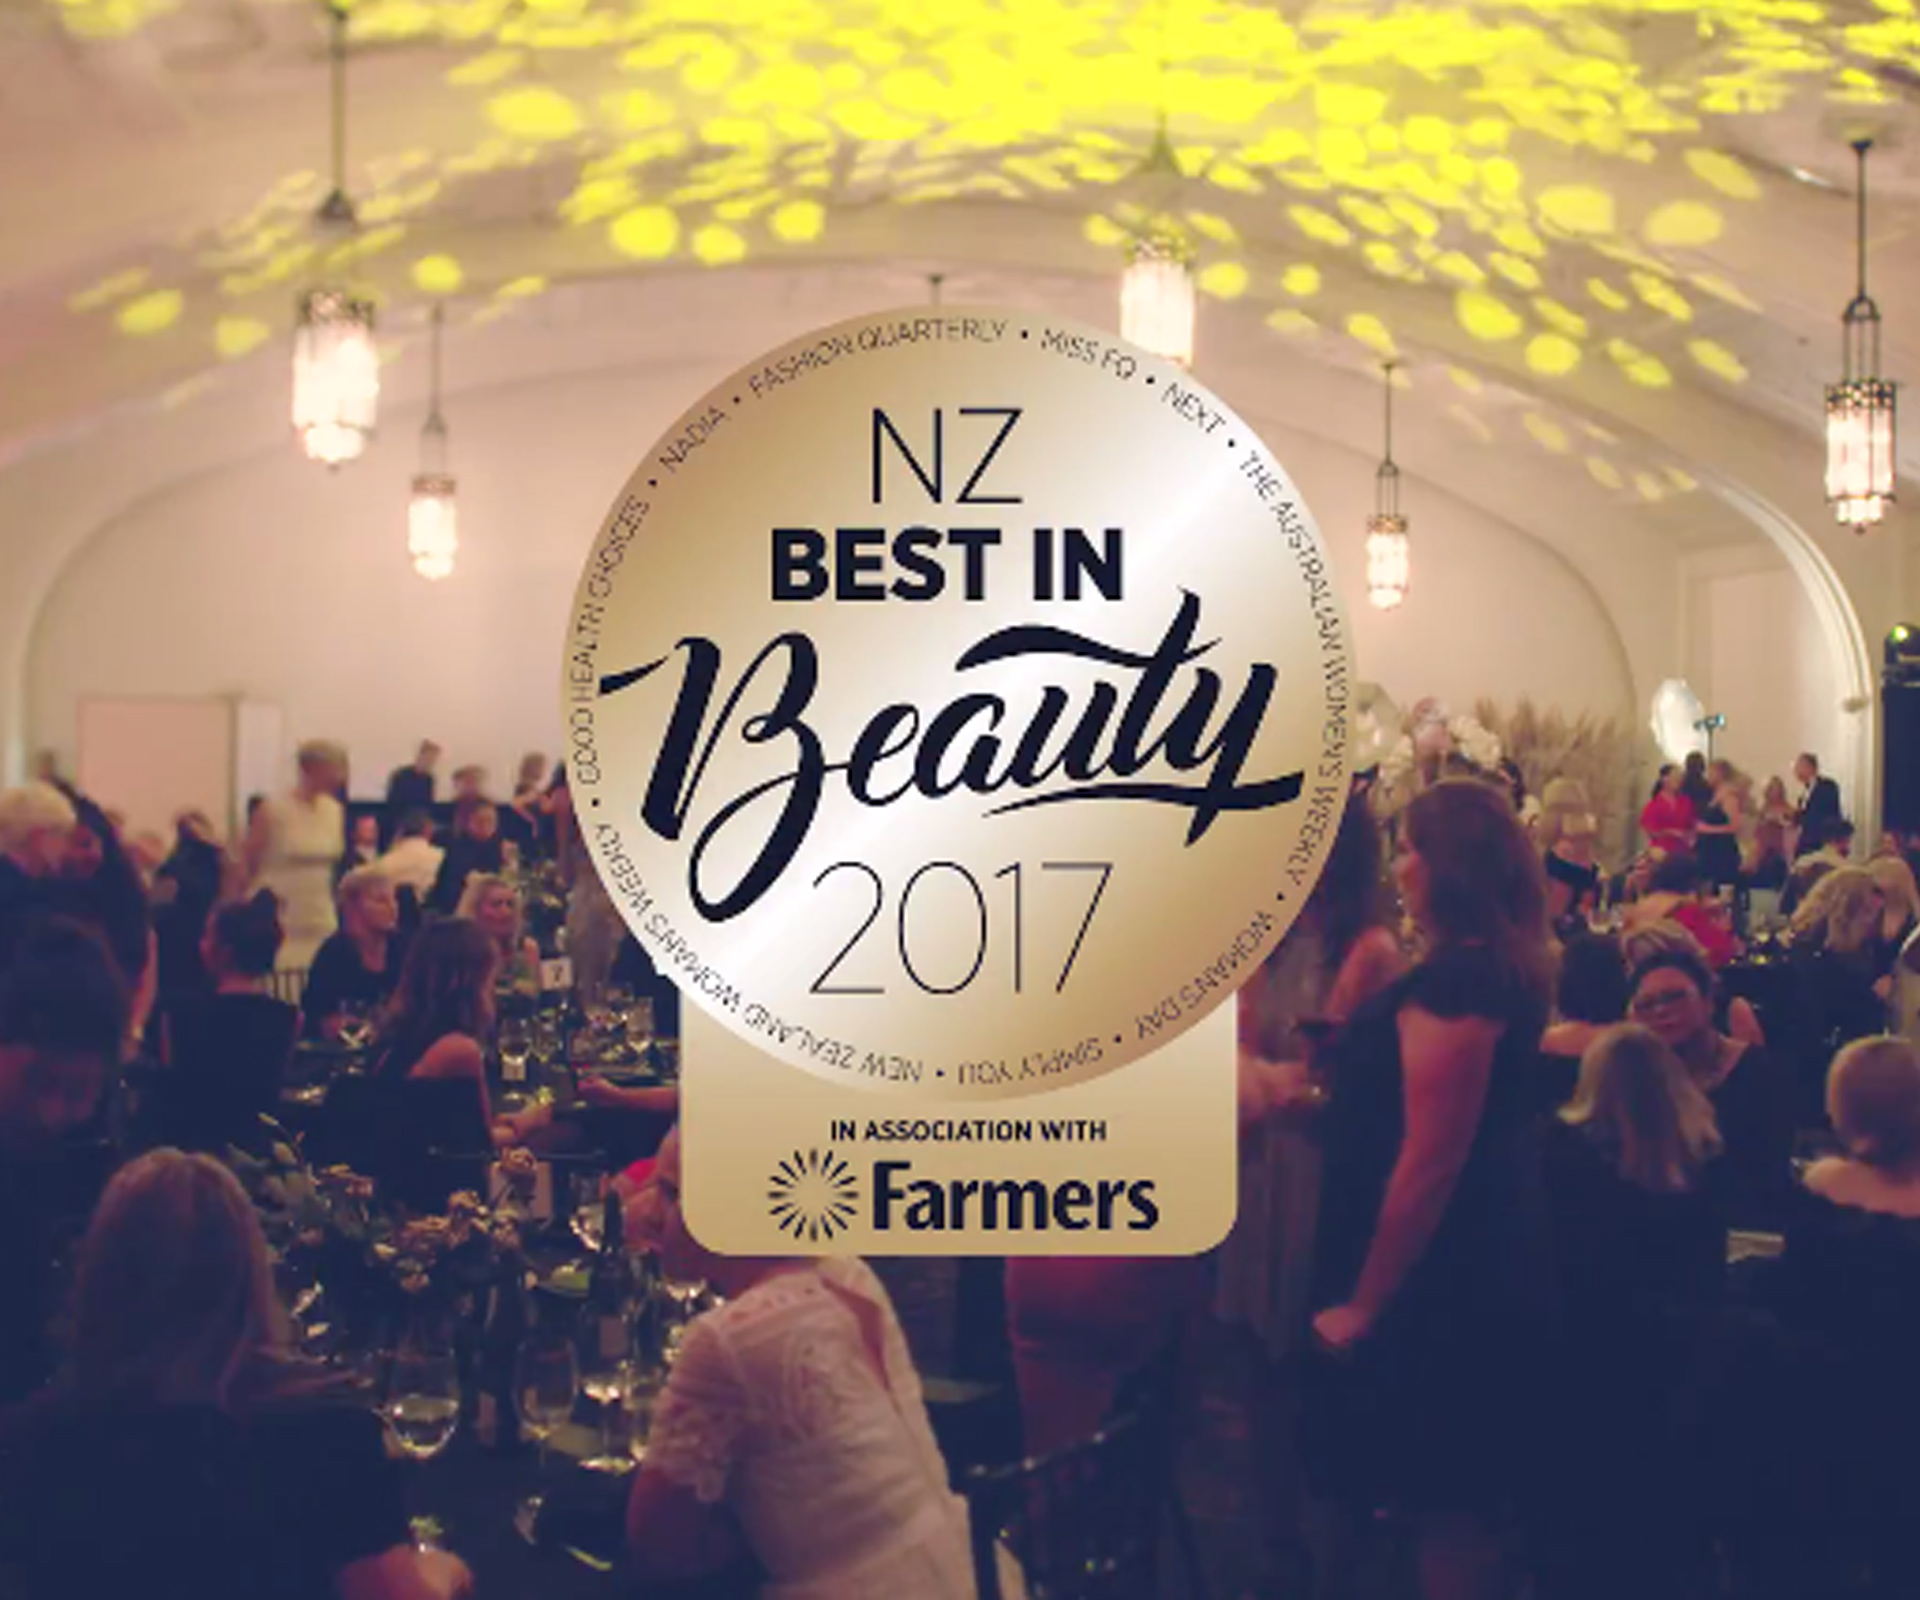 Inside the NZ Best in Beauty Awards 2017